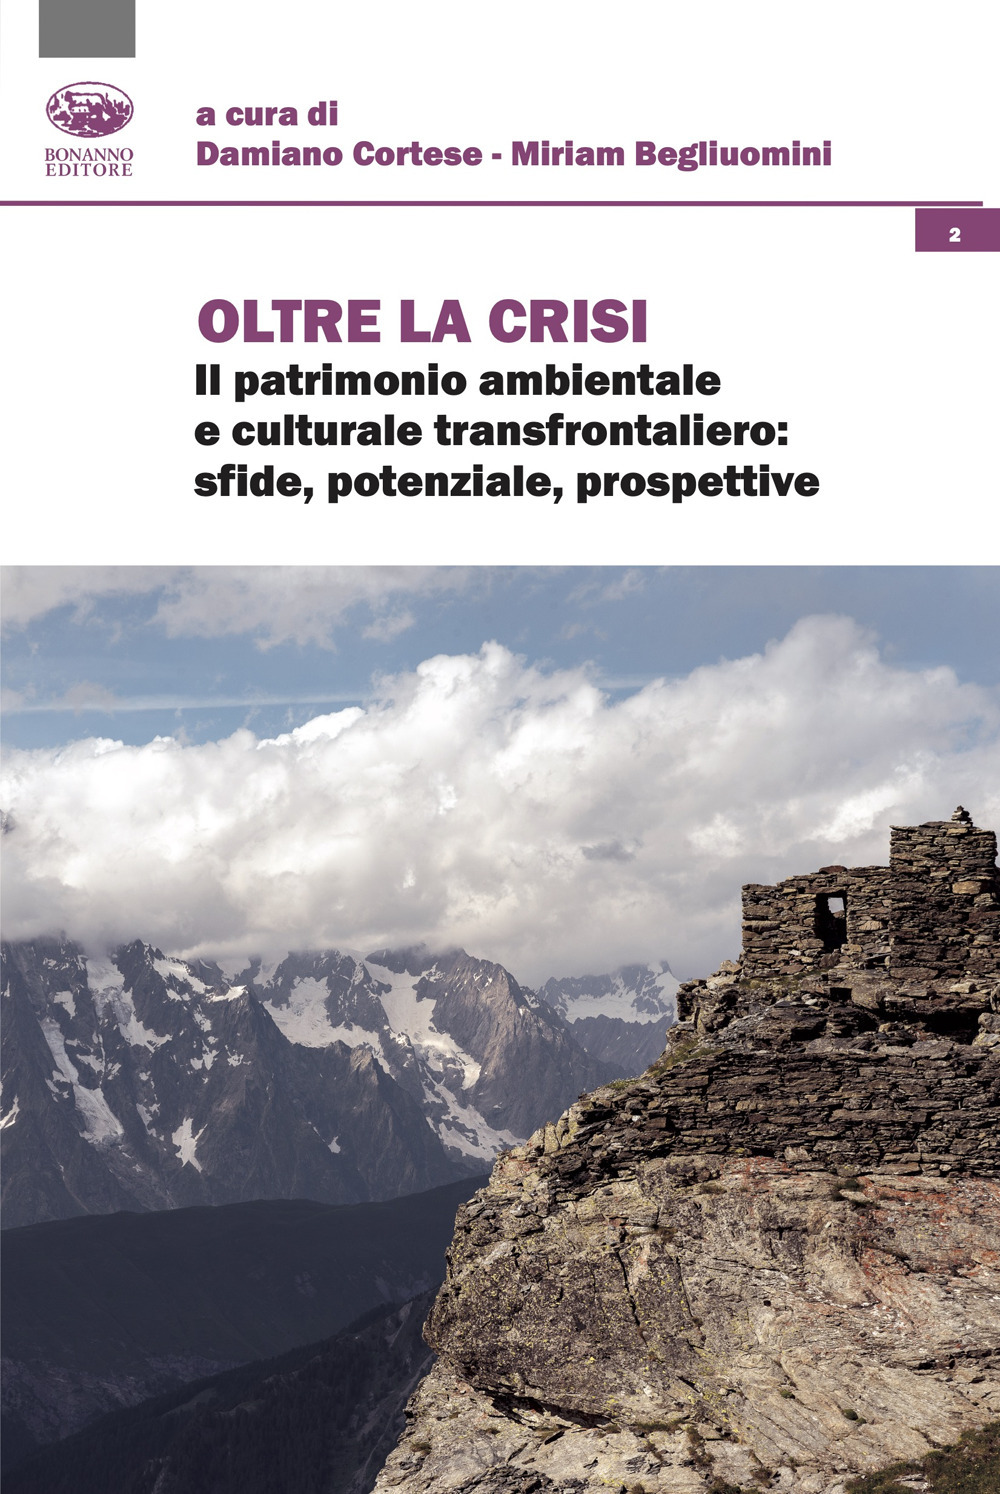 Oltre la crisi. Il patrimonio ambientale e culturale transfrontaliero: sfide, potenziale, prospettive